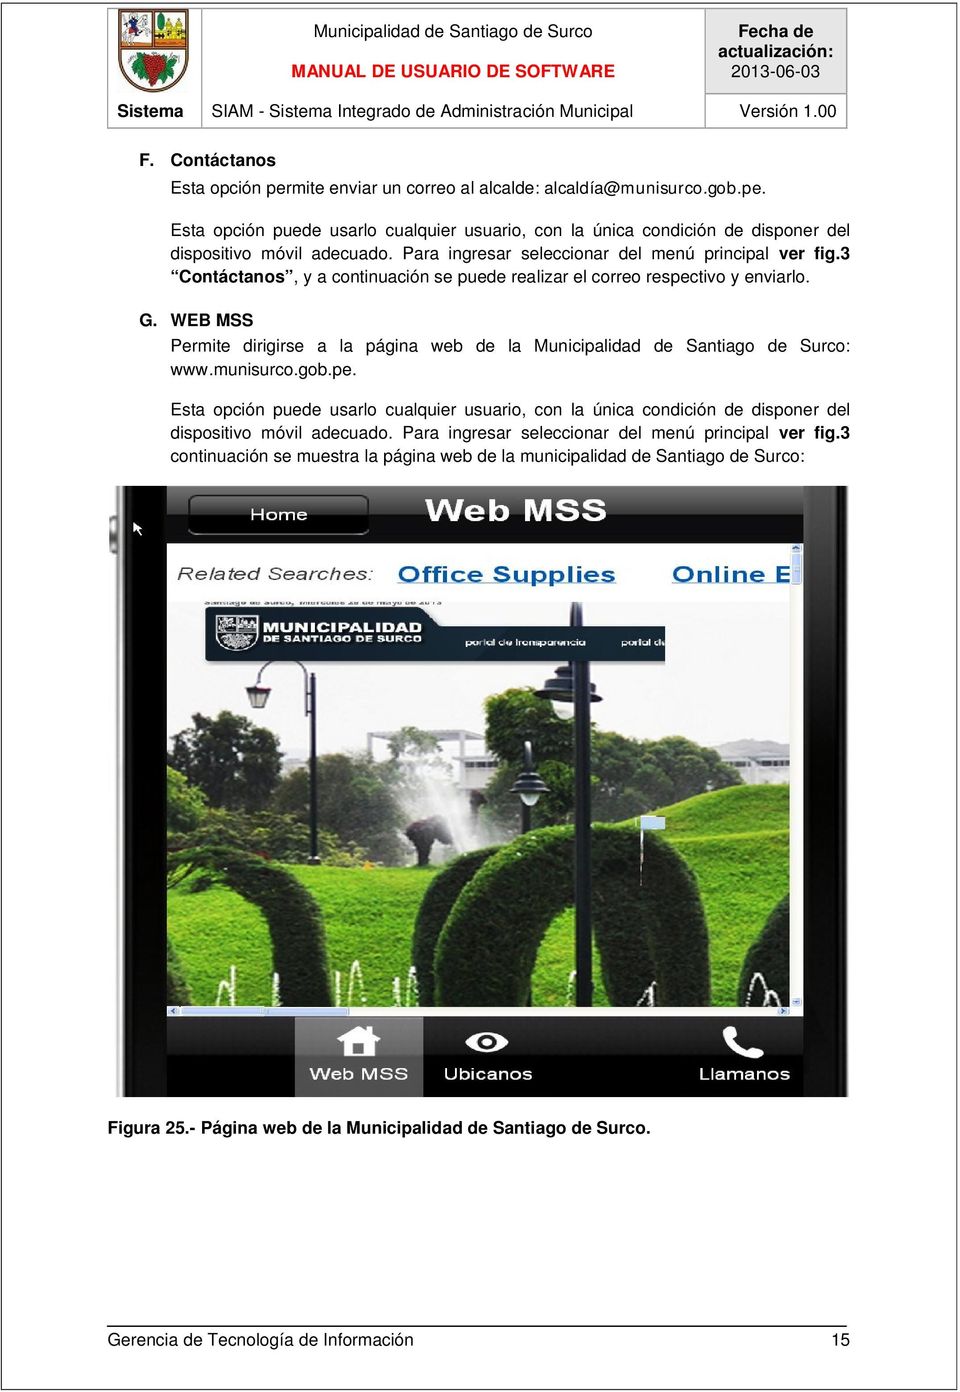 WEB MSS Permite dirigirse a la página web de la Municipalidad de Santiago de Surco: www.munisurco.gob.pe.